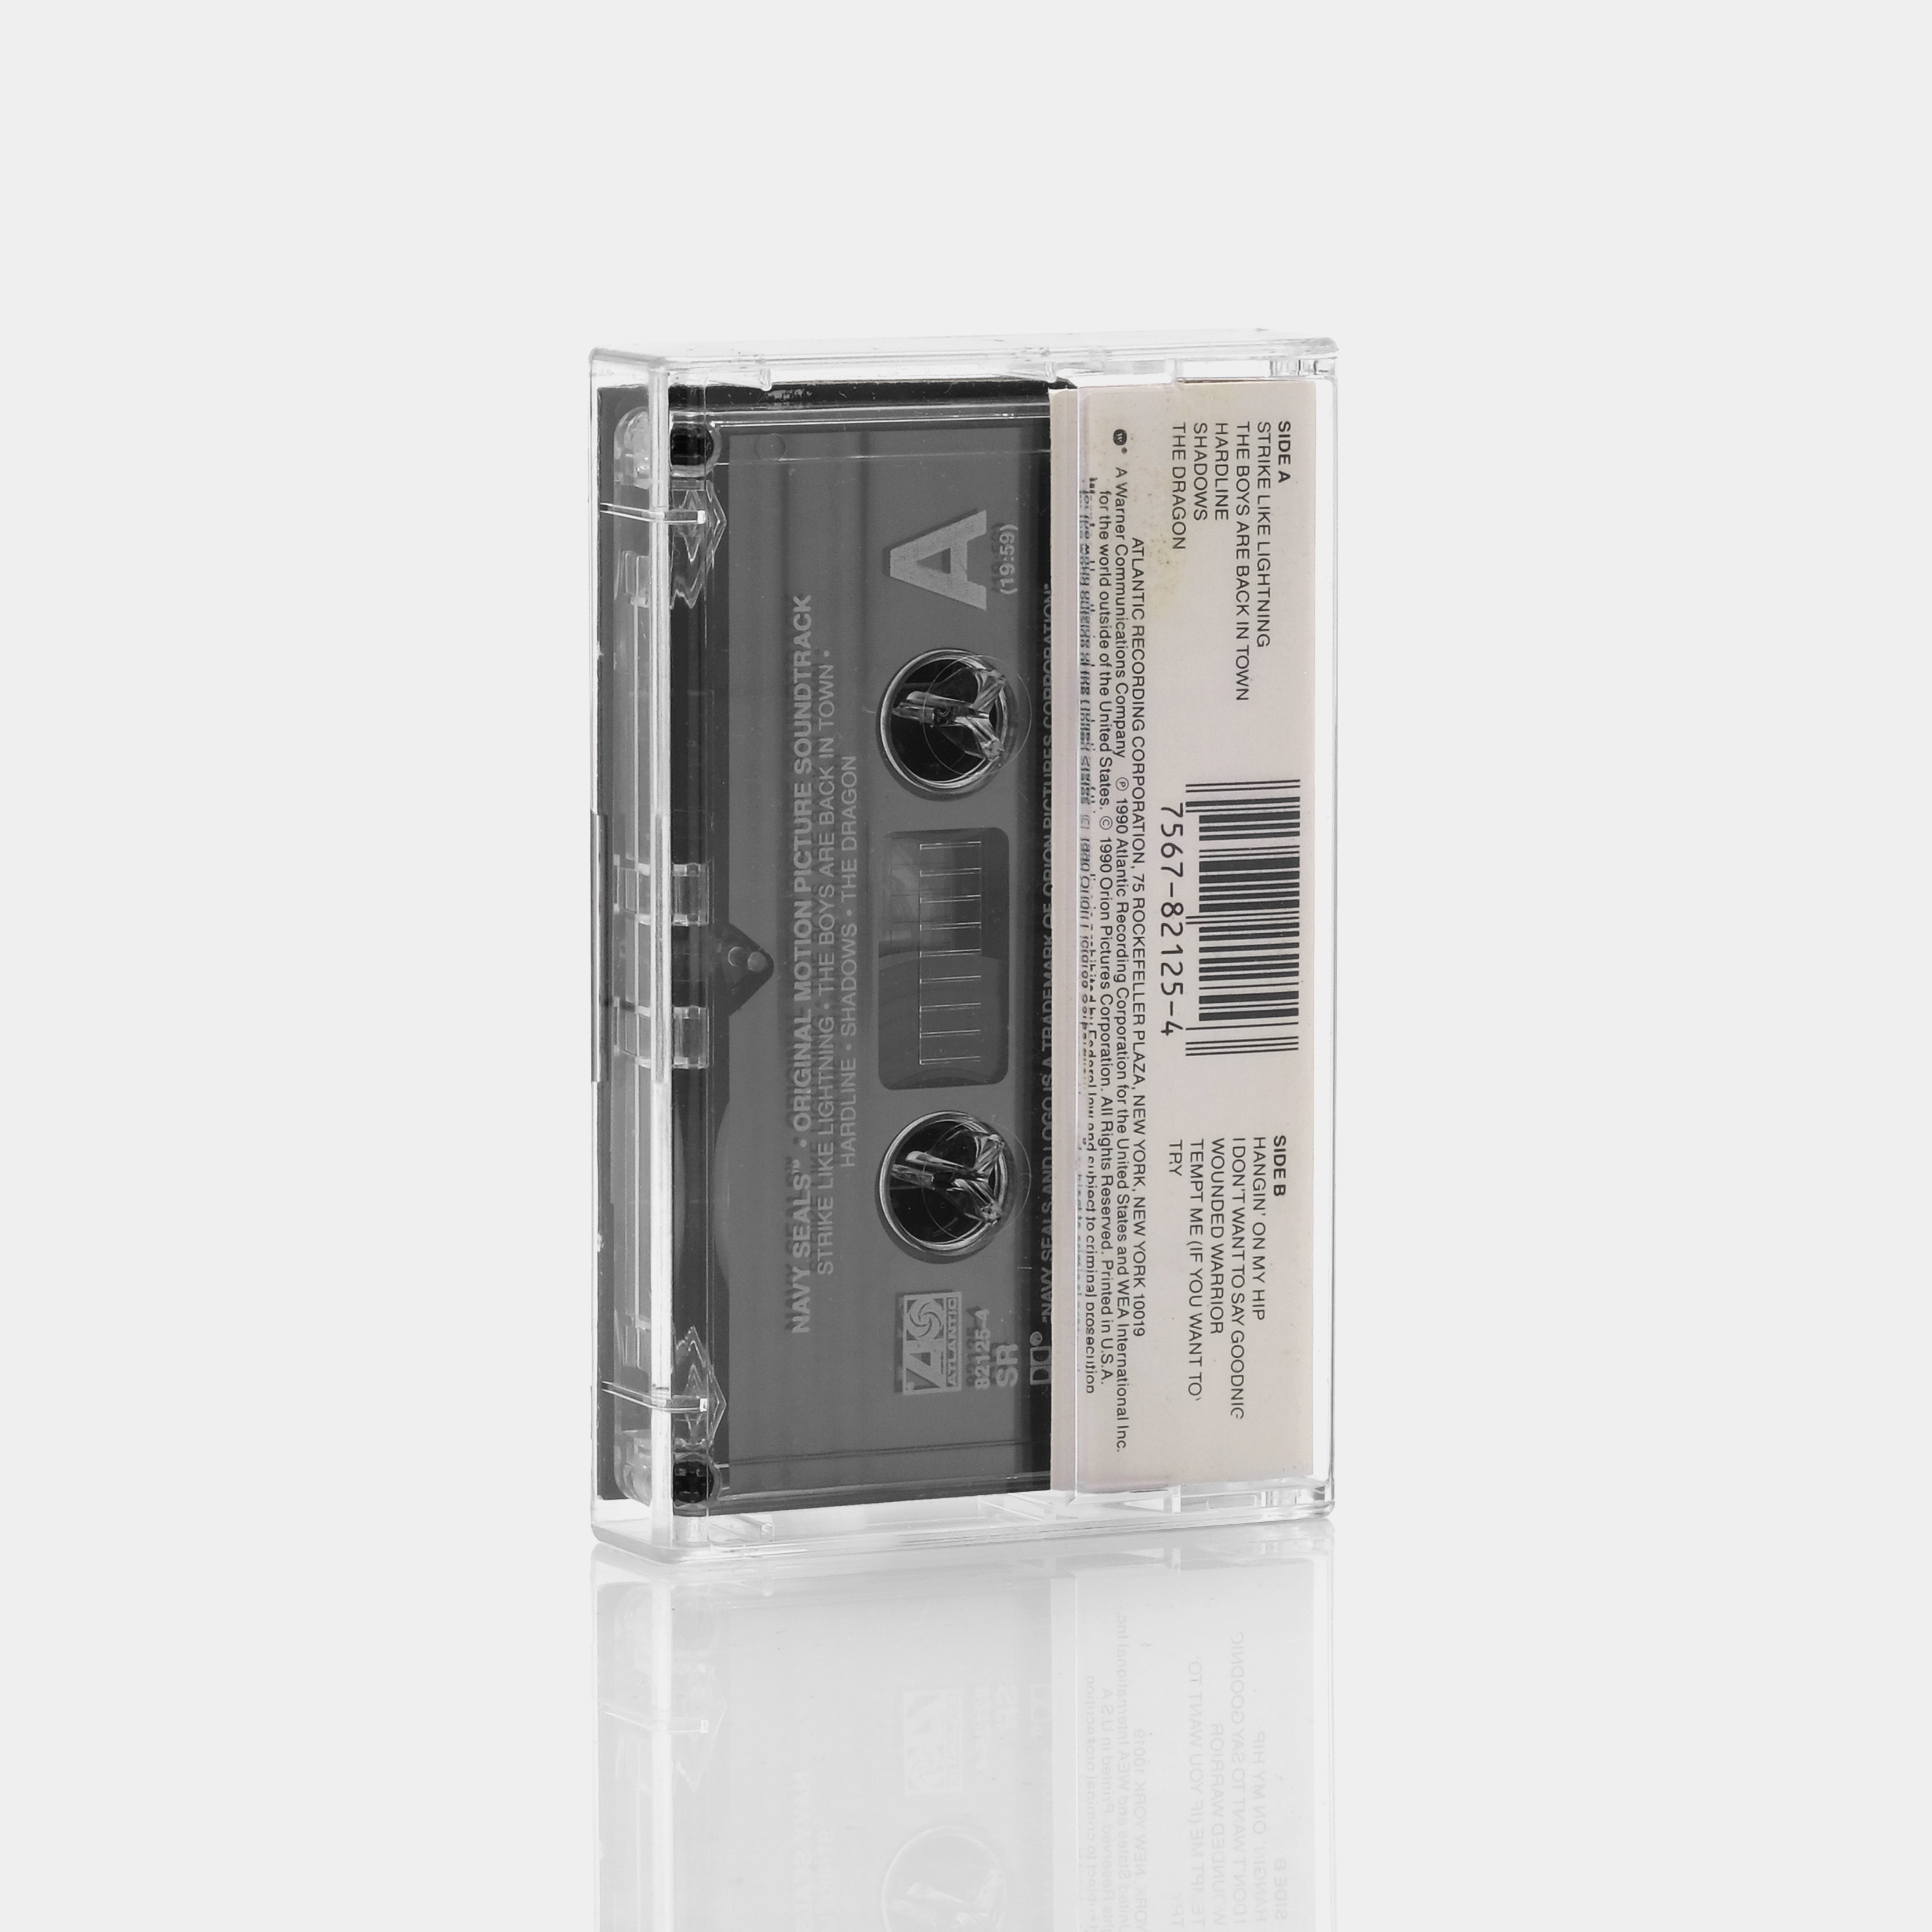 Navy Seals (Original Motion Picture Soundtrack) Cassette Tape